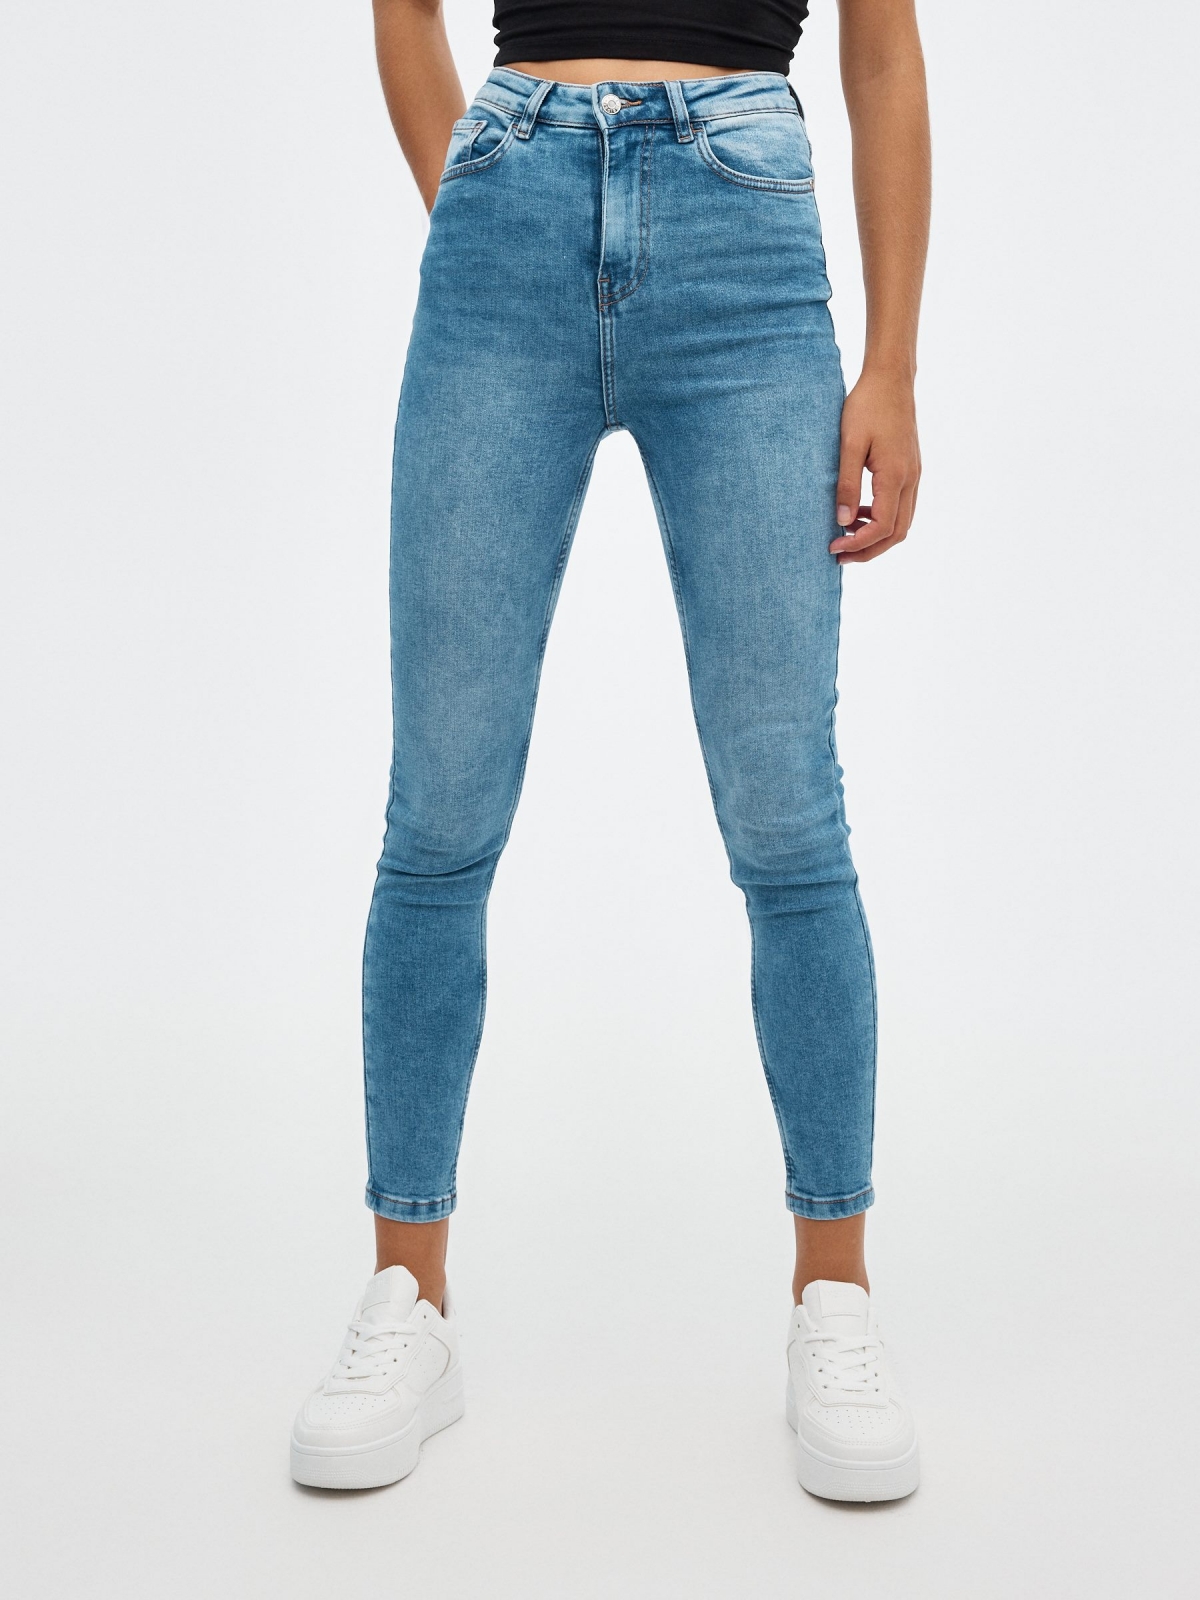 Jeans skinny de cintura subida azul vista meia frontal